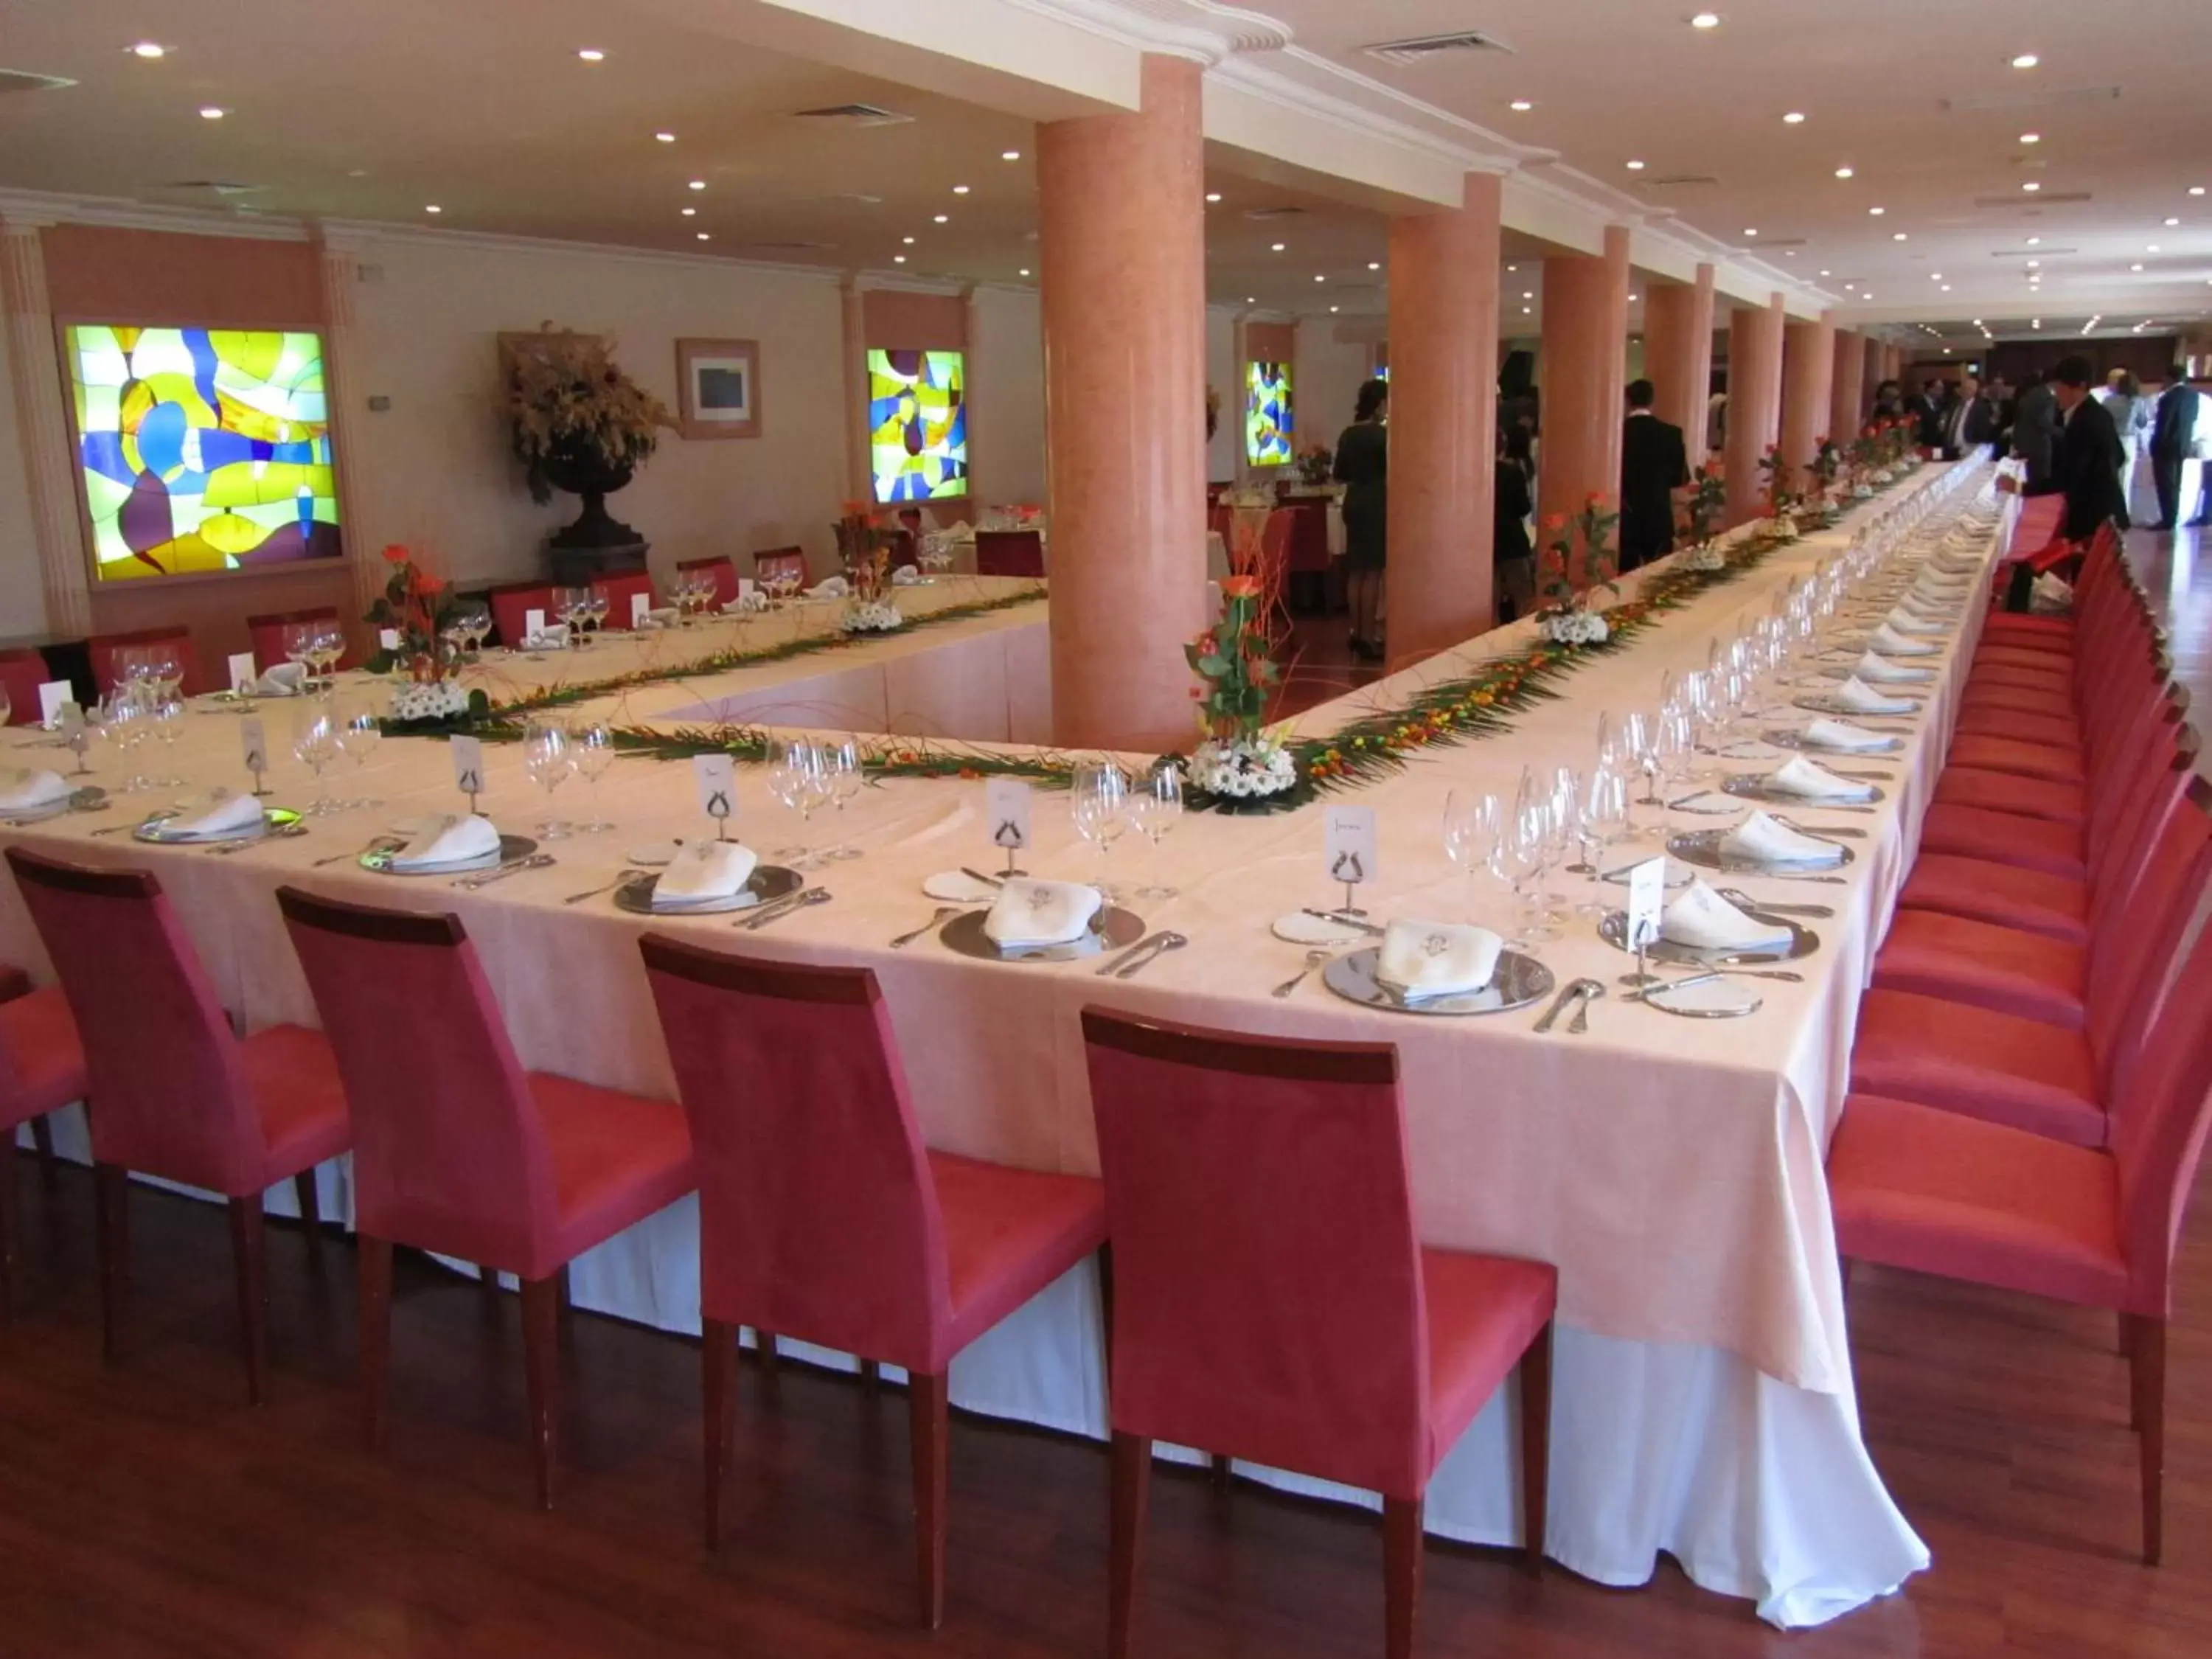 Banquet/Function facilities, Banquet Facilities in Bellavista